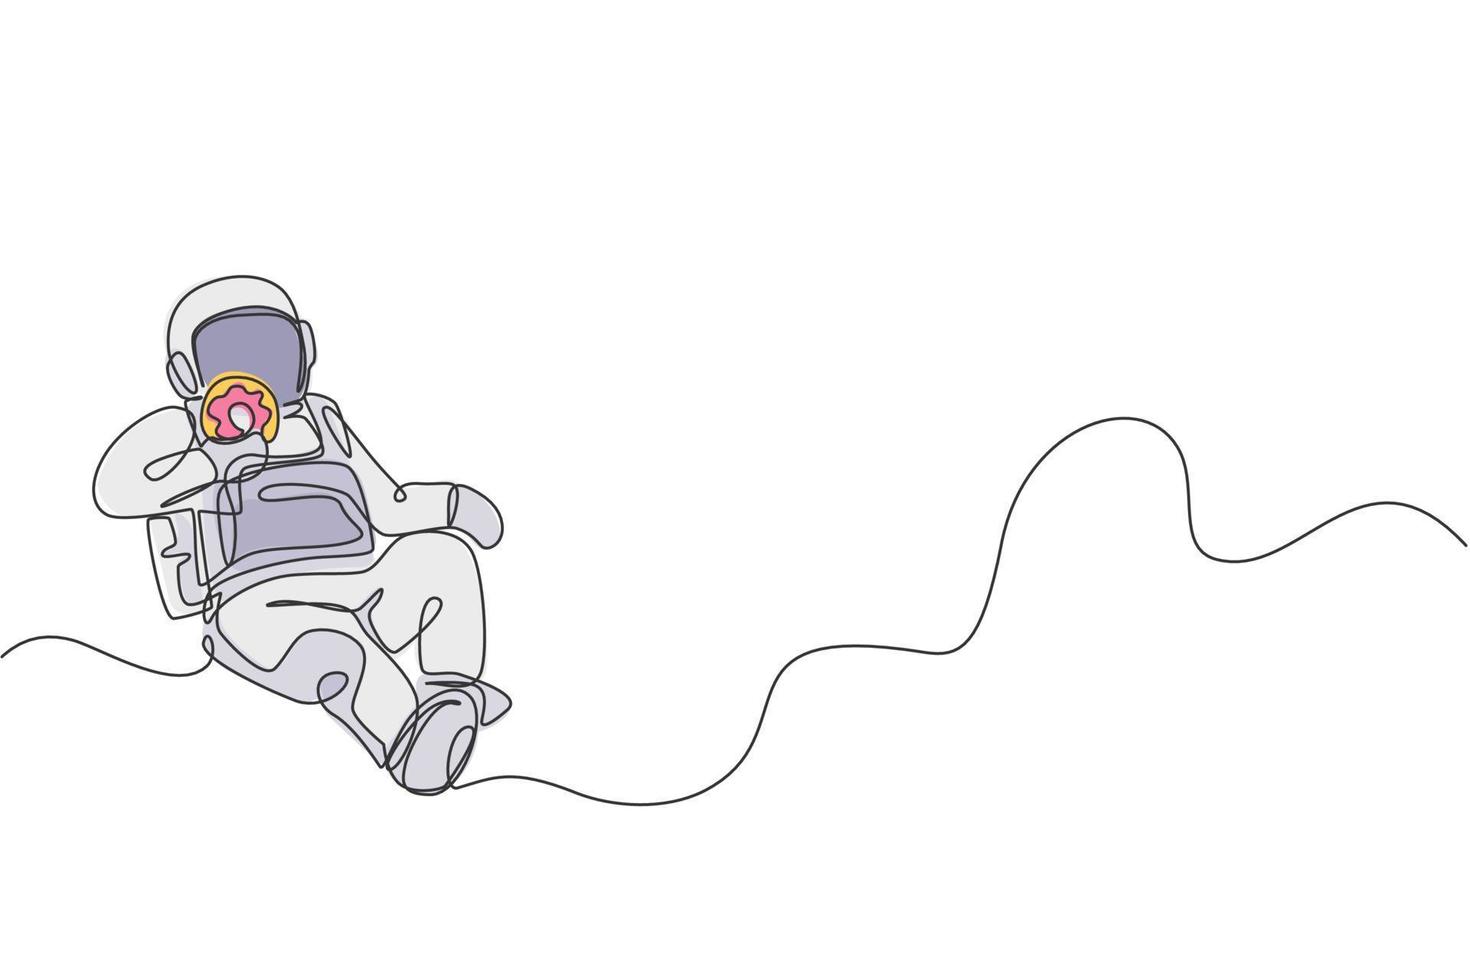 un seul dessin d'astronaute volant dans la galaxie du cosmos tout en mangeant une illustration vectorielle graphique de beignet de sucre sucré. concept de vie fantastique dans l'espace extra-atmosphérique. conception de dessin de ligne continue moderne vecteur